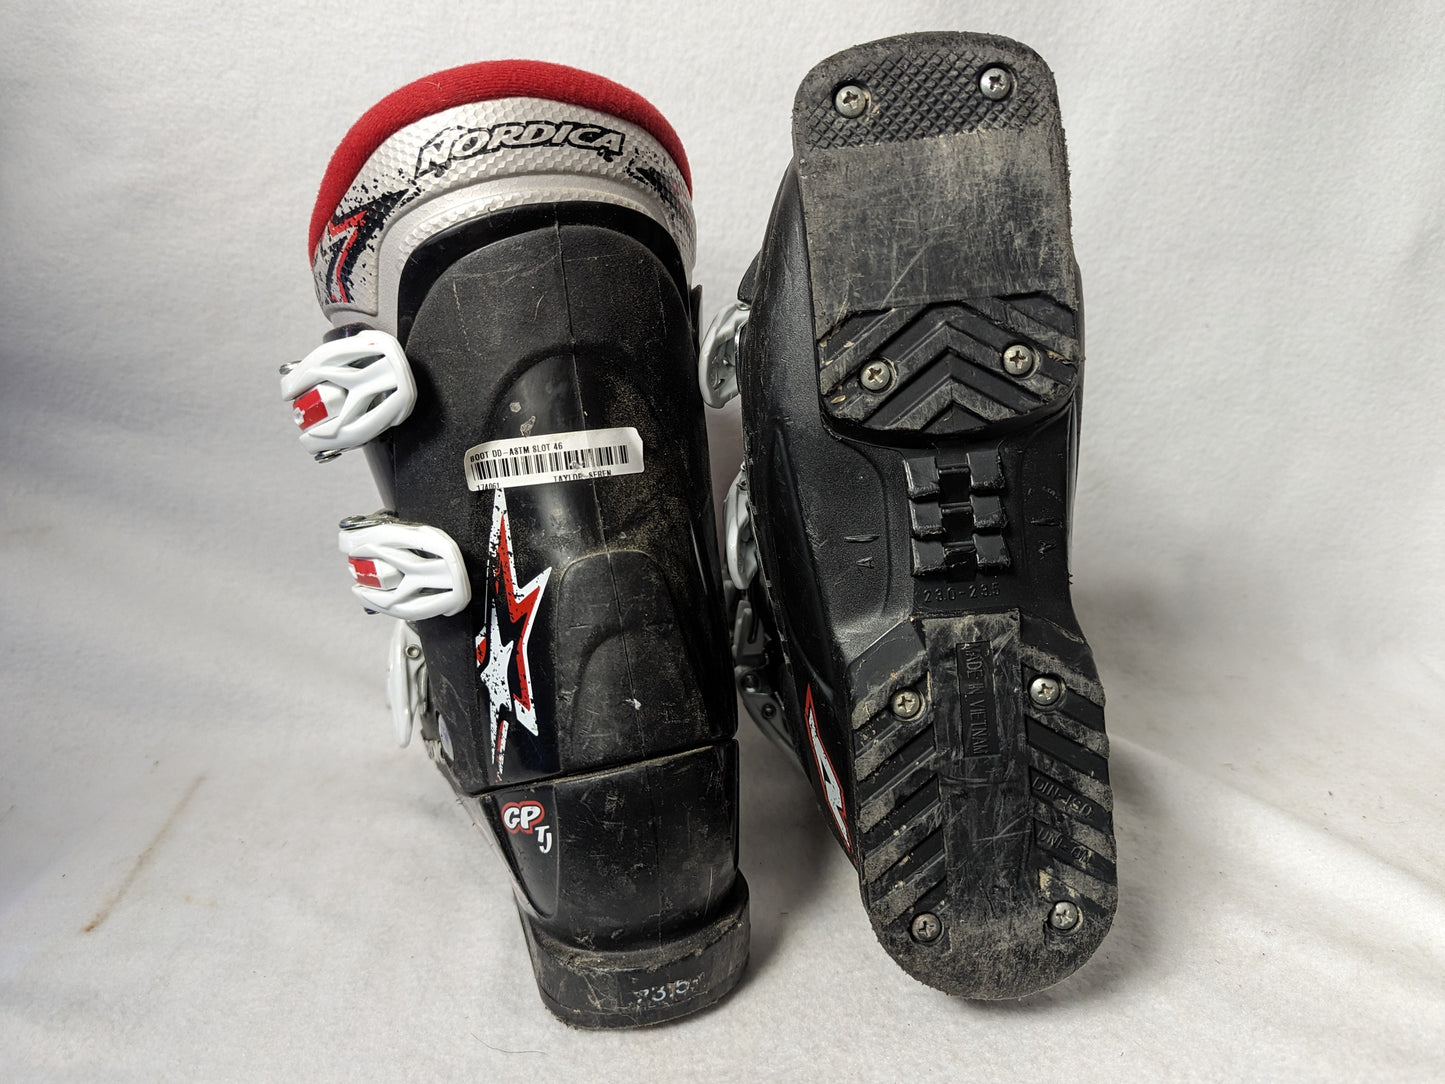 Nordica GP TJ Team Ski Boots Size 23.5 Black Condition Used